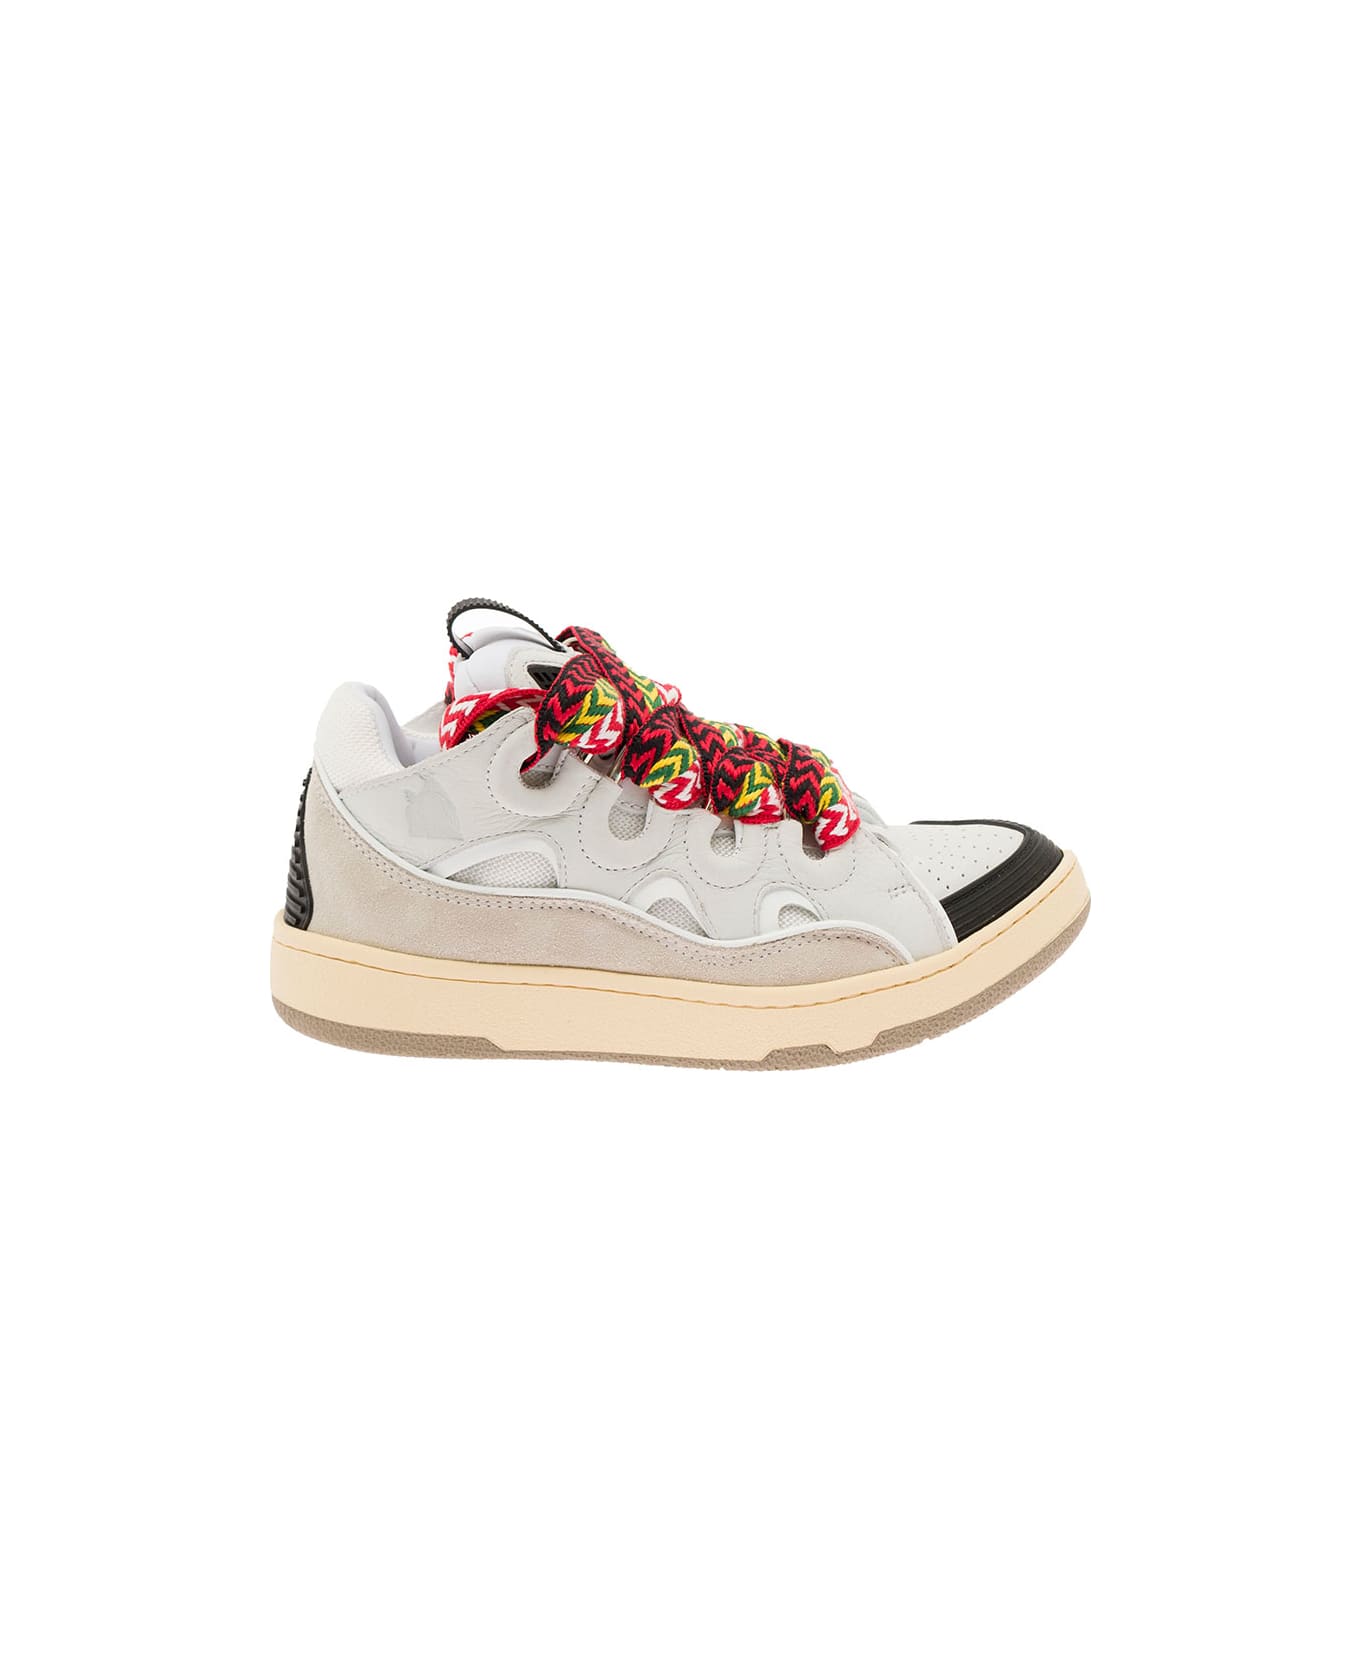 Lanvin 'curb' Sneaker In Leather Multicolor Woman Lanvin - White